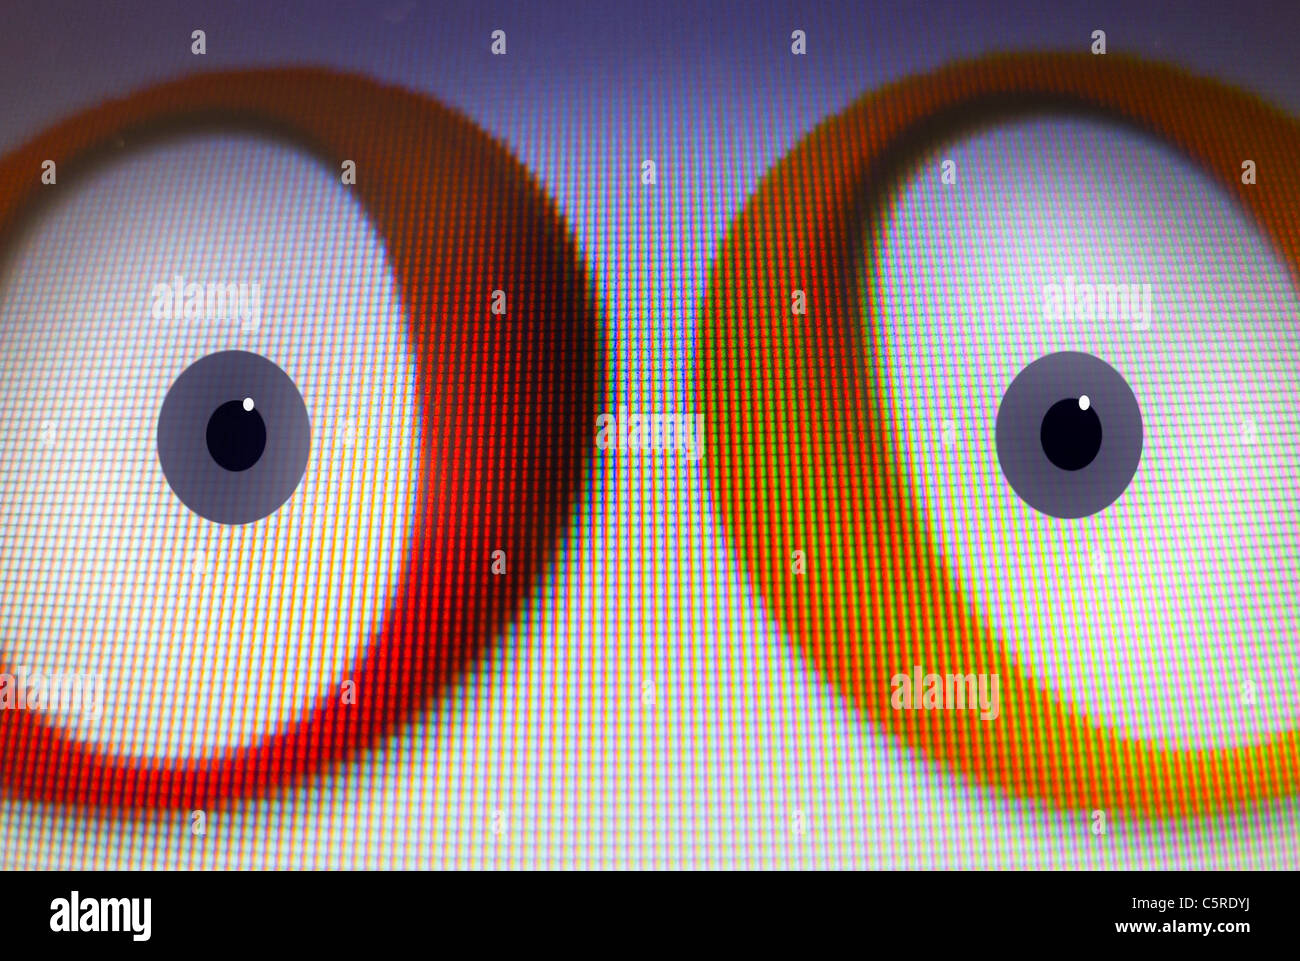 Google's 'Oo' avec les yeux ajouté numériquement. Banque D'Images